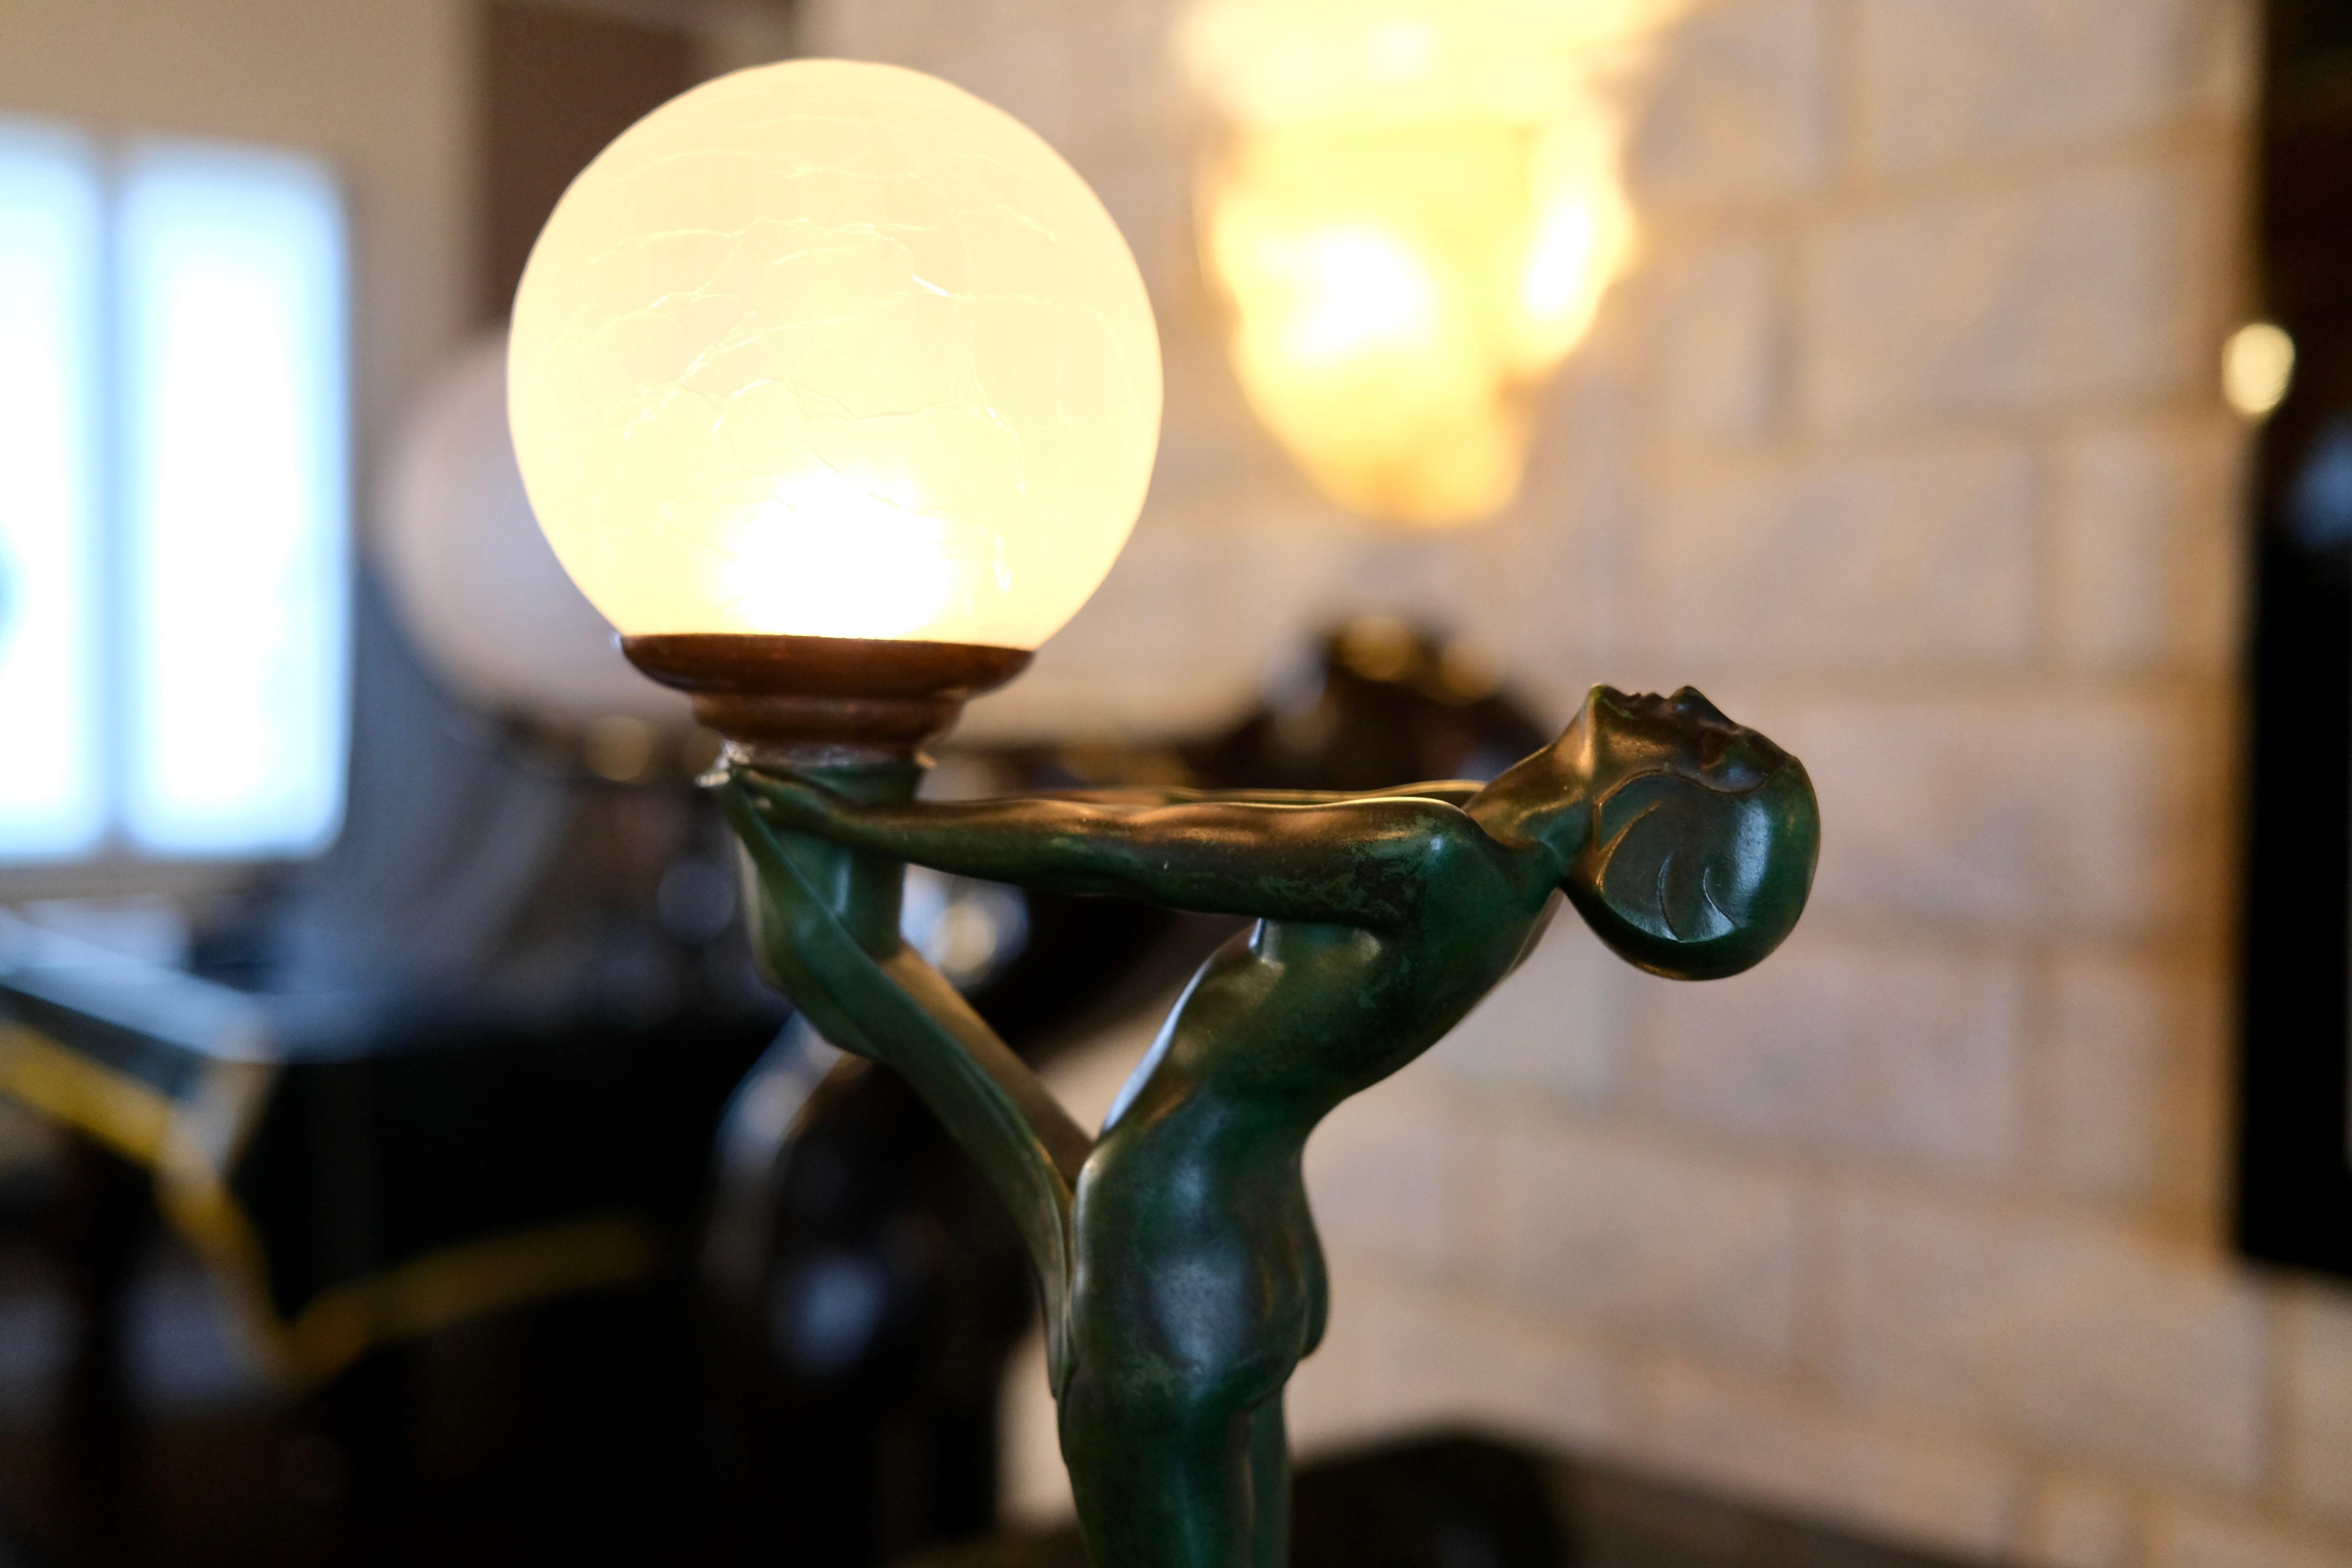 French Important Art Deco Clarté Sculpture Lueur Lamp from the Art Deco Max Le Verrier